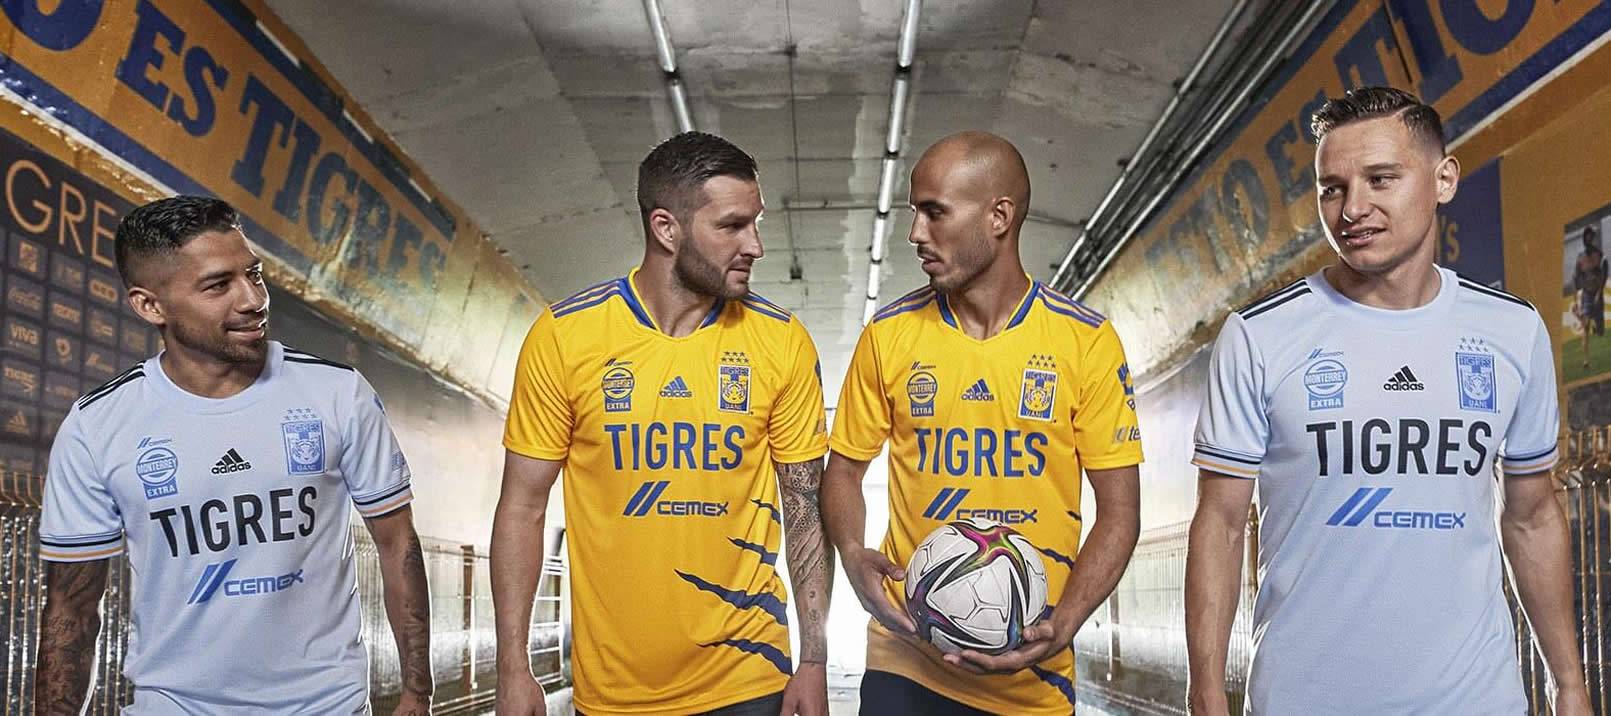 Camisetas adidas de los Tigres UANL 2021/22